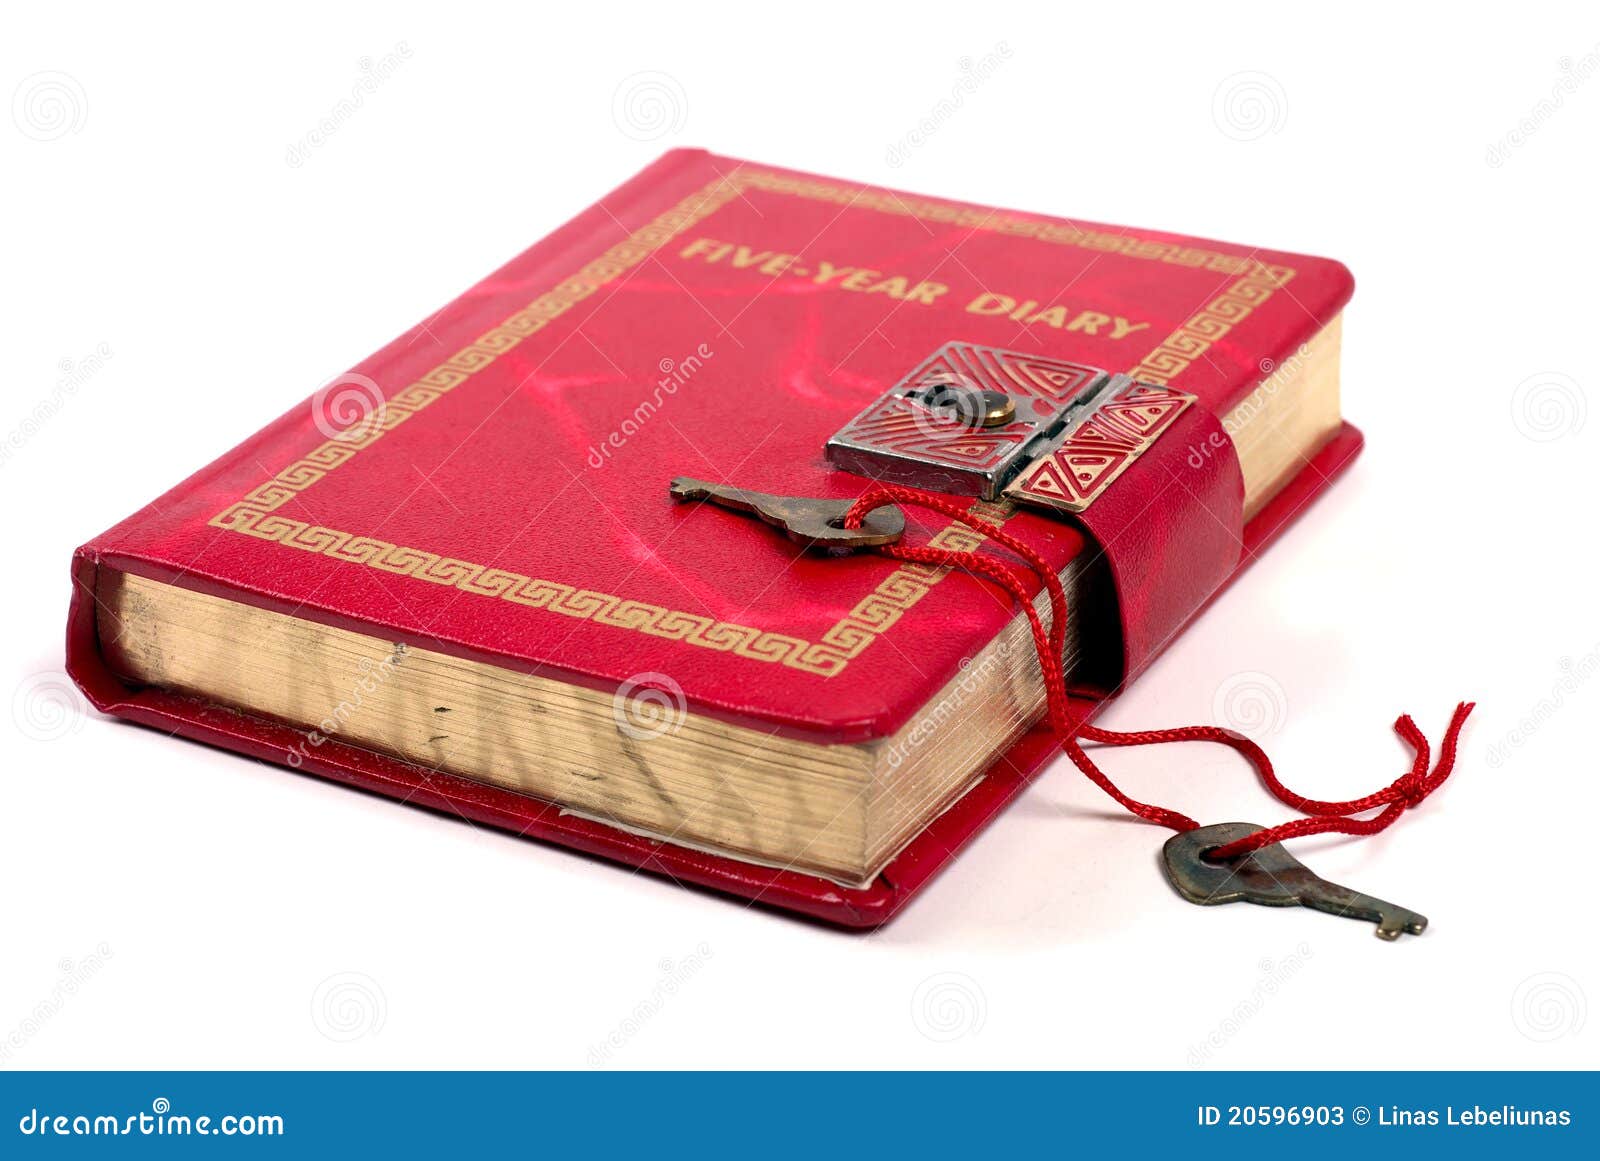 Antique Diary Book Stock Photos - Image: 20596903